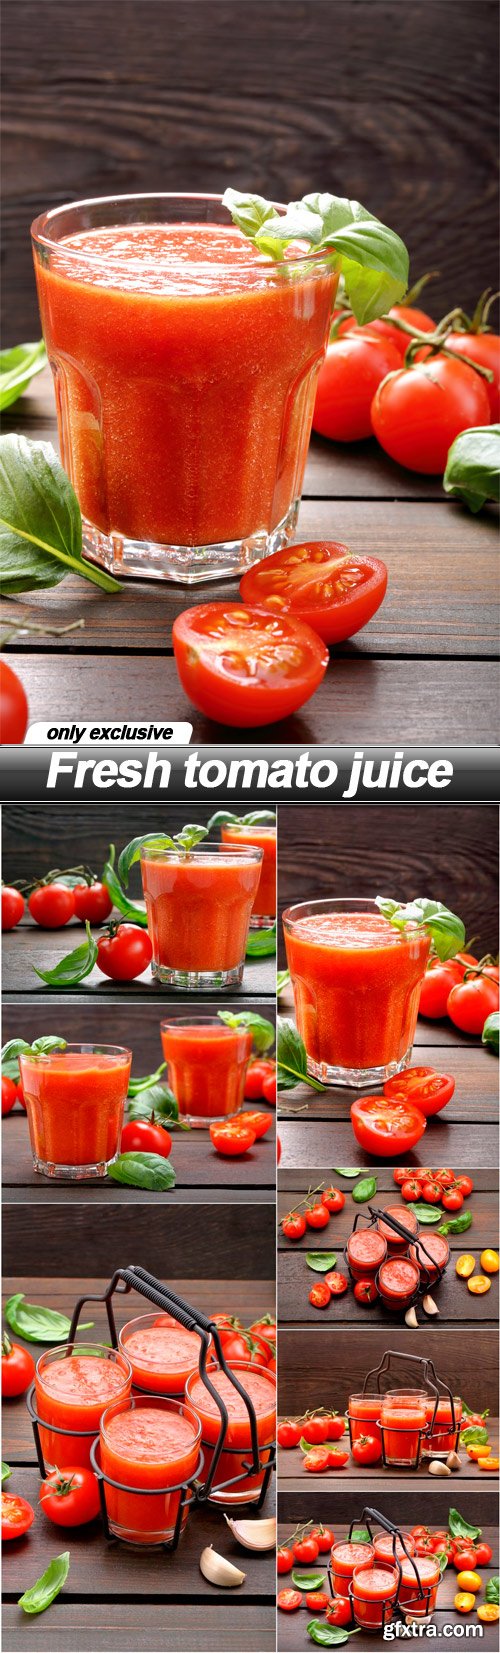 Fresh tomato juice - 7 UHQ JPEG